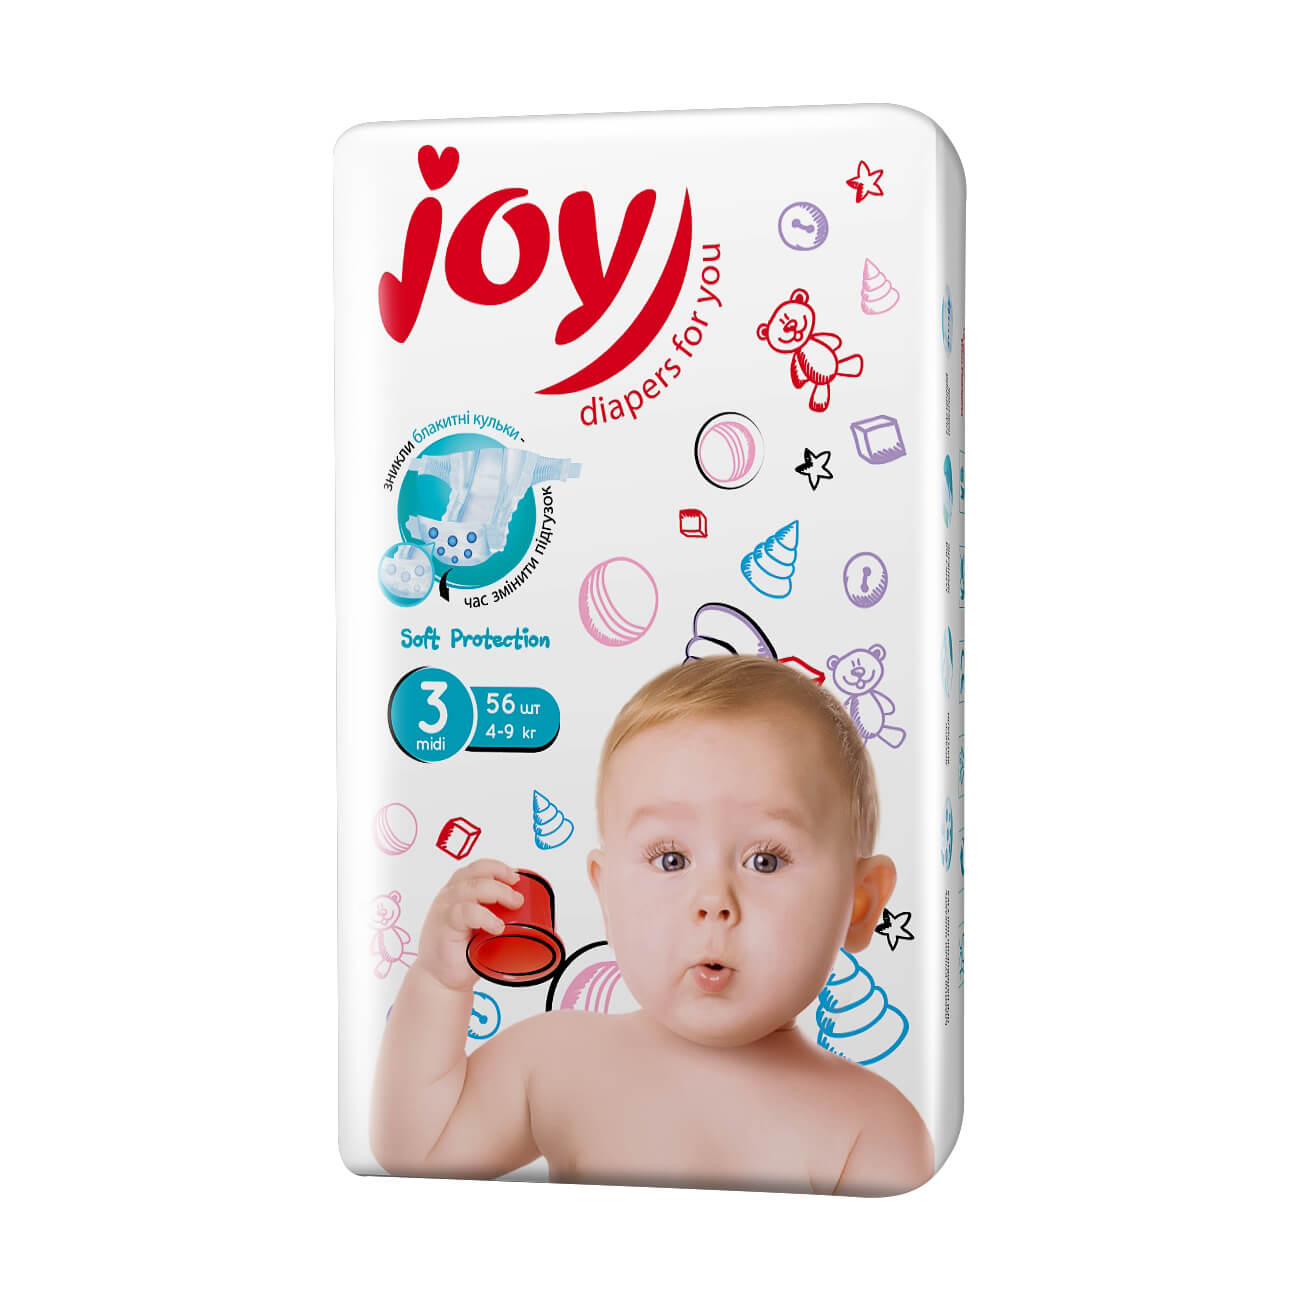   Підгузки Joy Soft Protection розмір 3 (4-9 кг), 56 шт   